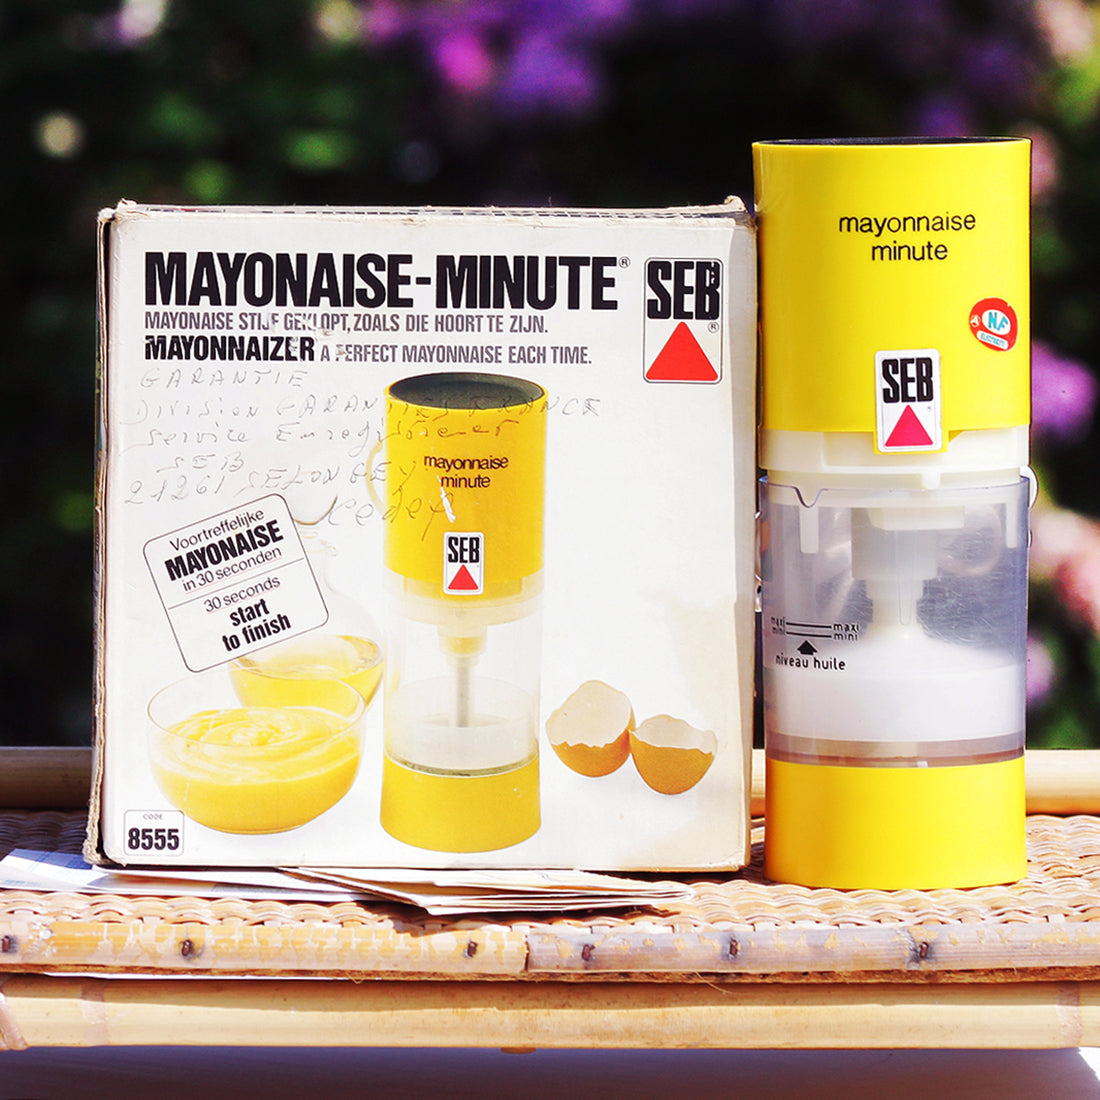 Mayonnaise minute de seb appareil a mayonnaise à Montpellier